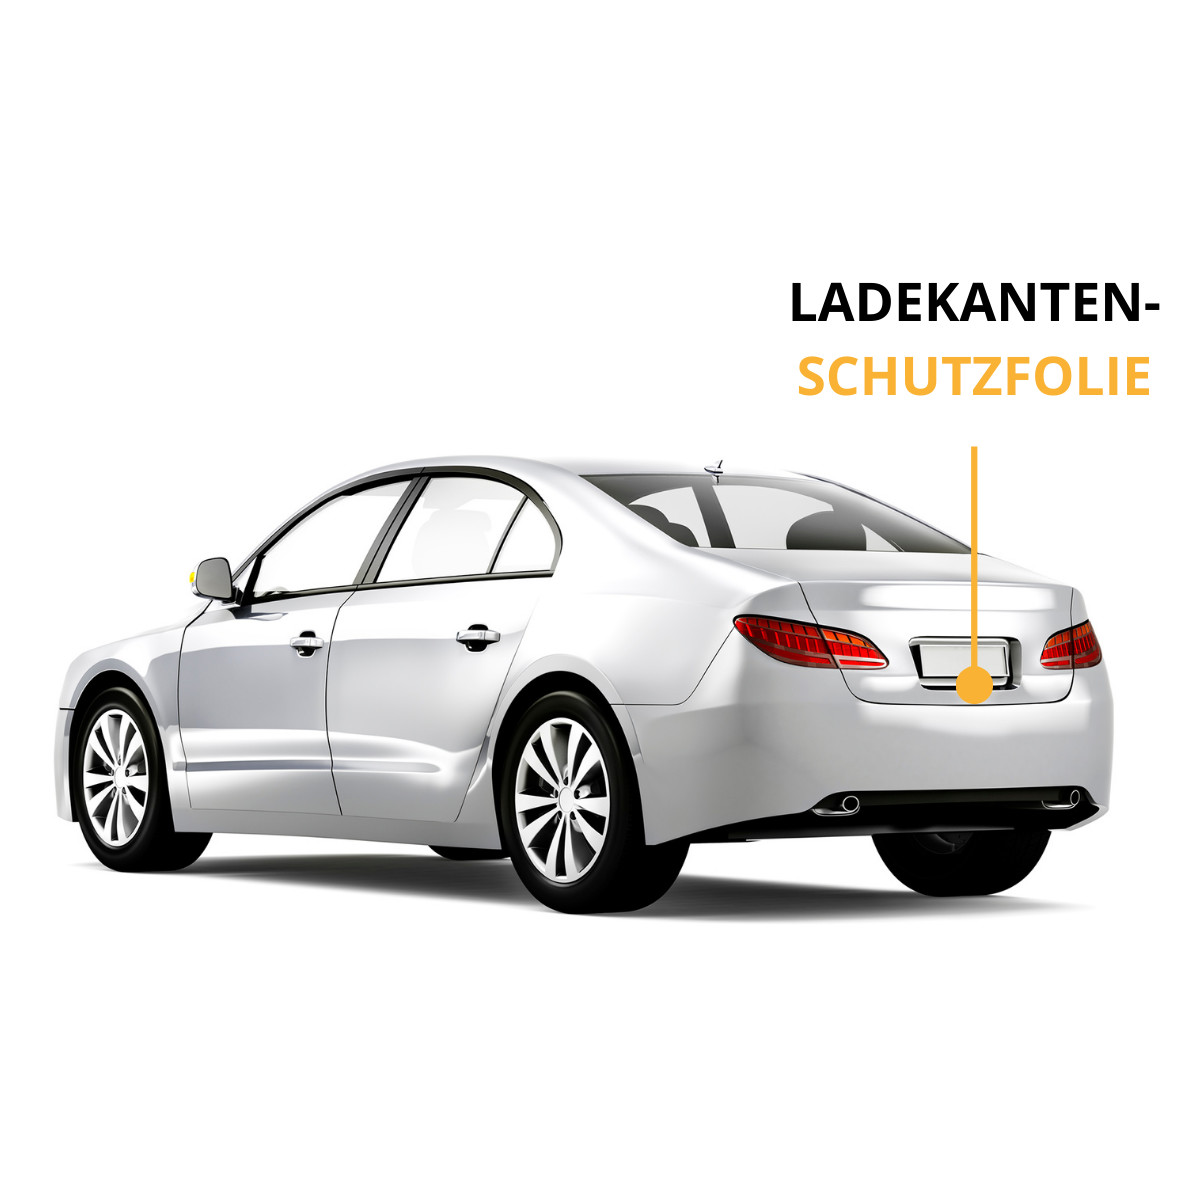 LACKSCHUTZFOLIE-LADEKANTENSCHUTZ FÜR VW CADDY 2K 2.FACELIFT-TRANSPARENT